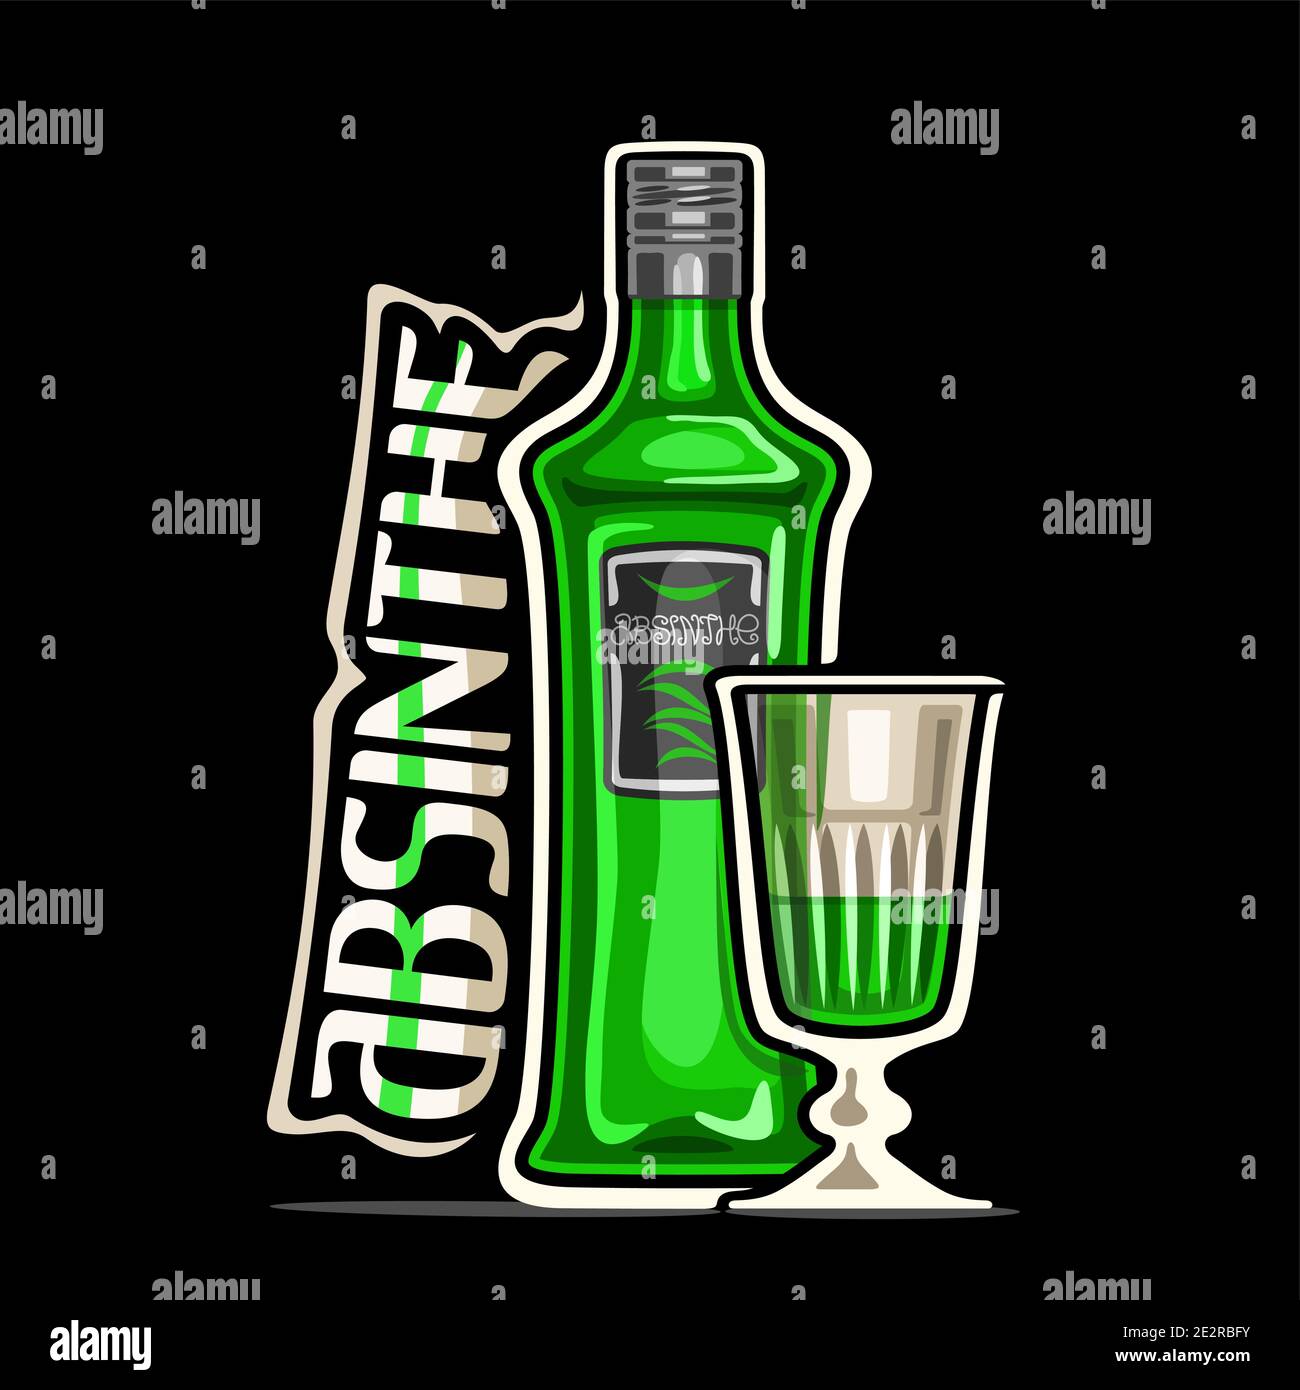 Vektor-Logo für Absinthe, Umriss Illustration von grünen klassischen Flasche mit dekorativem Etikett und halb voll Cartoon herzliches Glas, quadratische Plakette mit Stock Vektor